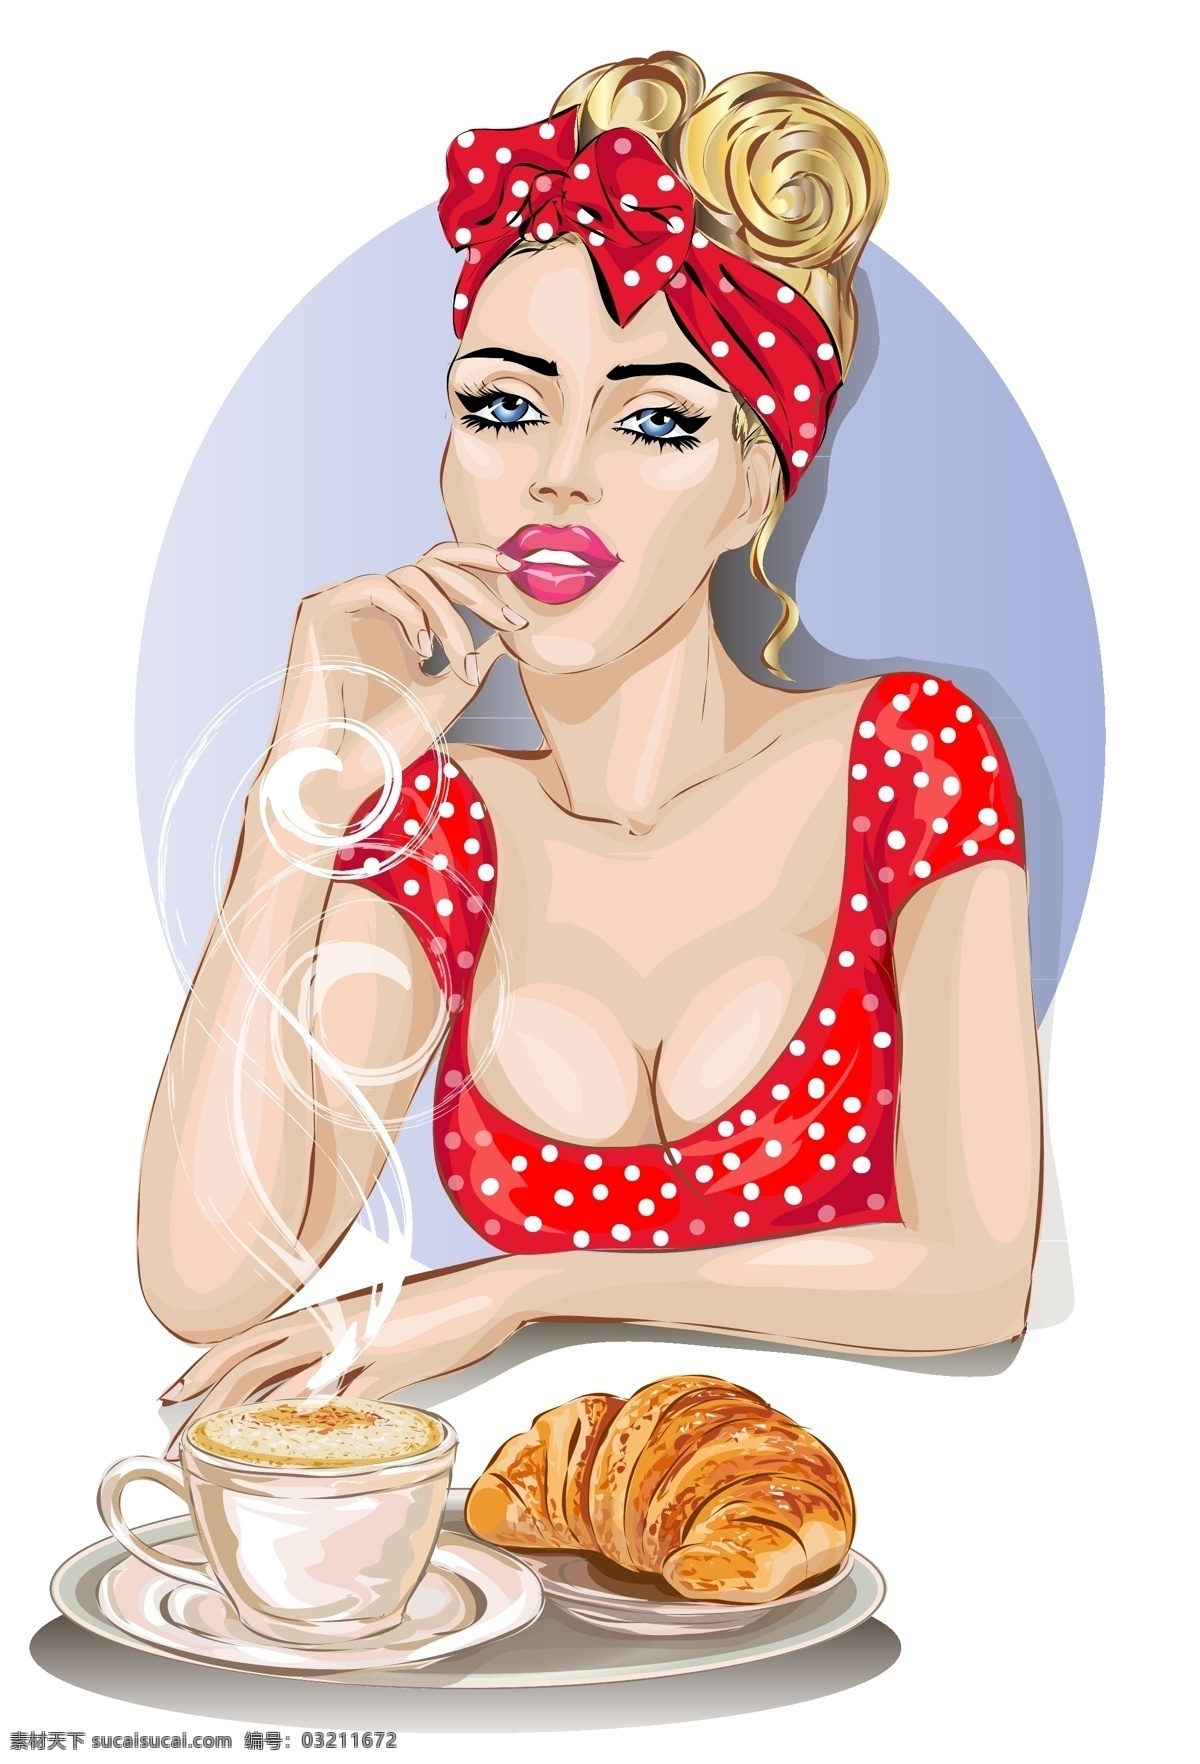 手绘 吃 早餐 外国 女人 插画 人物 手纸 吃早餐 美女 面包 咖啡 性感